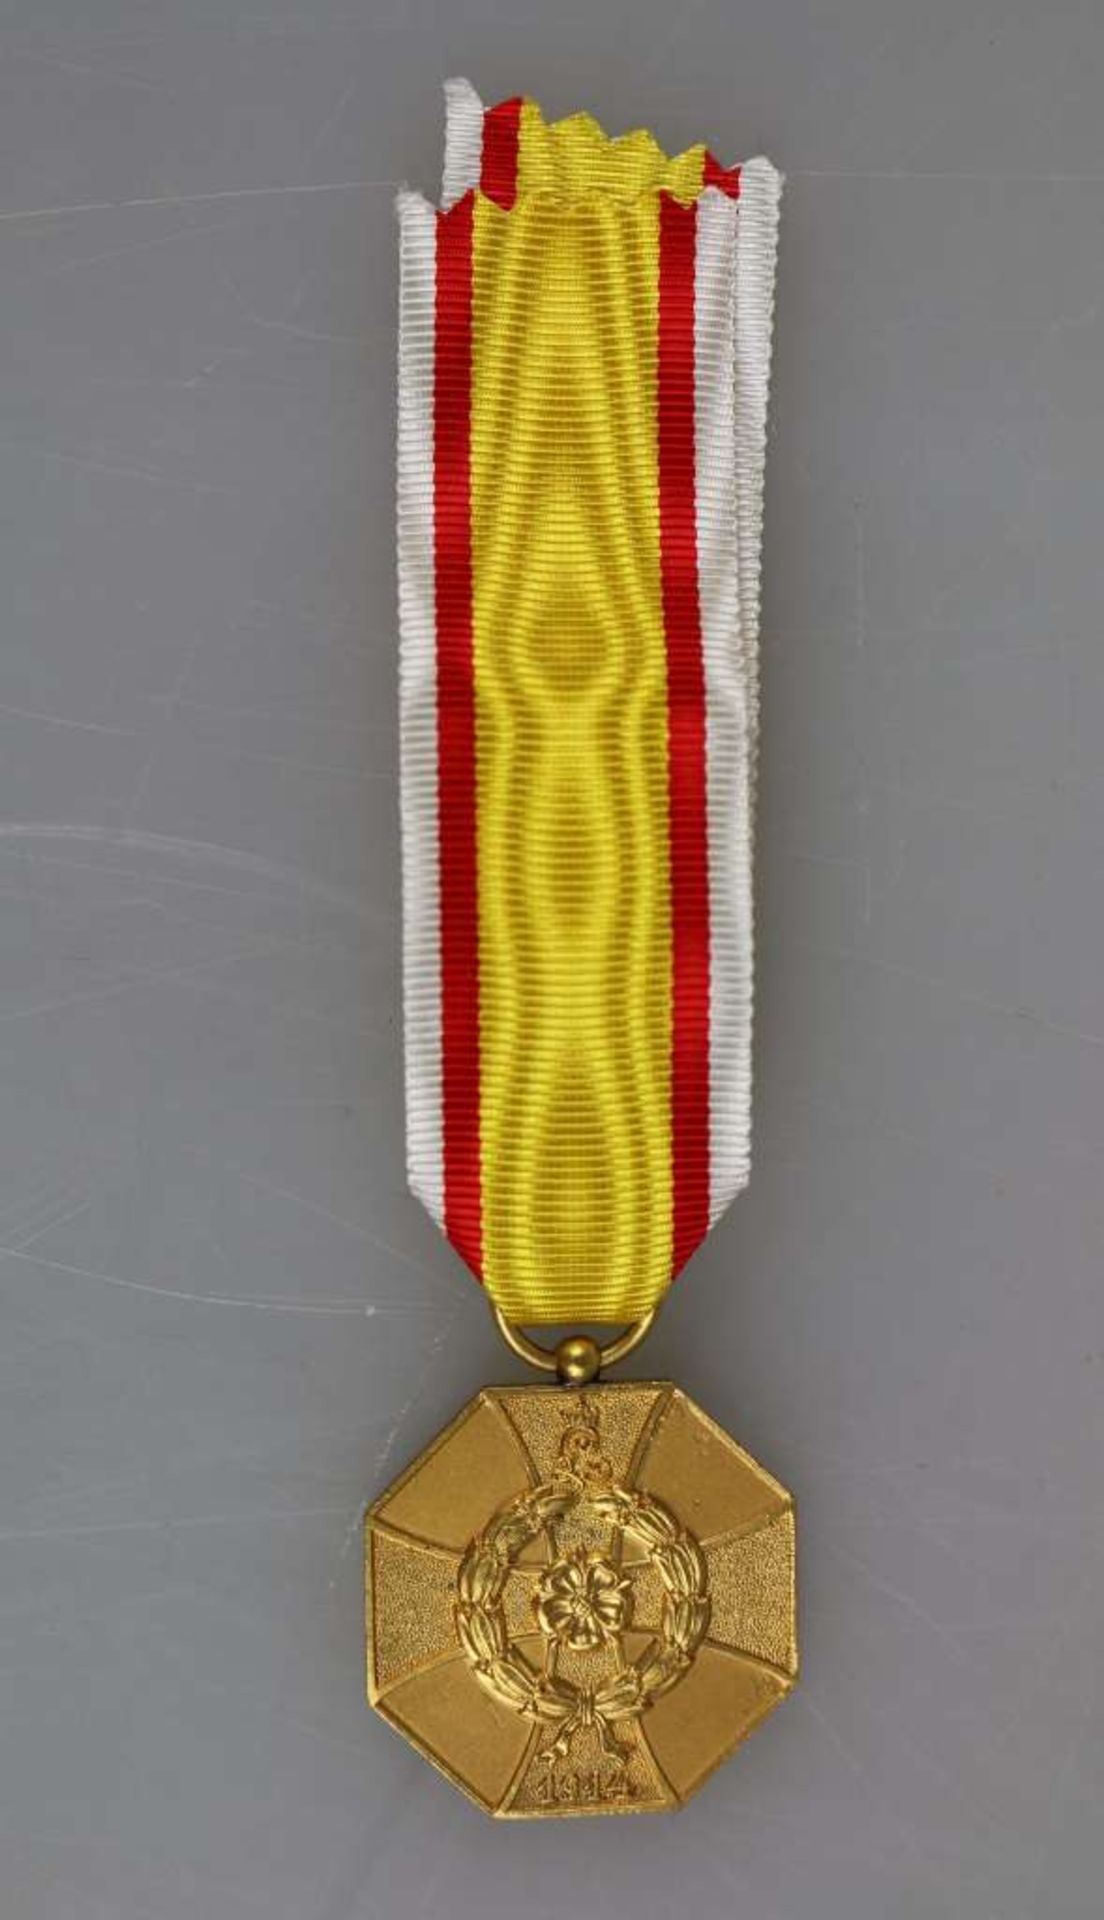 Lippe-Detmold, Kriegs-Ehrenmedaille am Band für Verdienst im Feindesland, Buntmetall vergoldet,